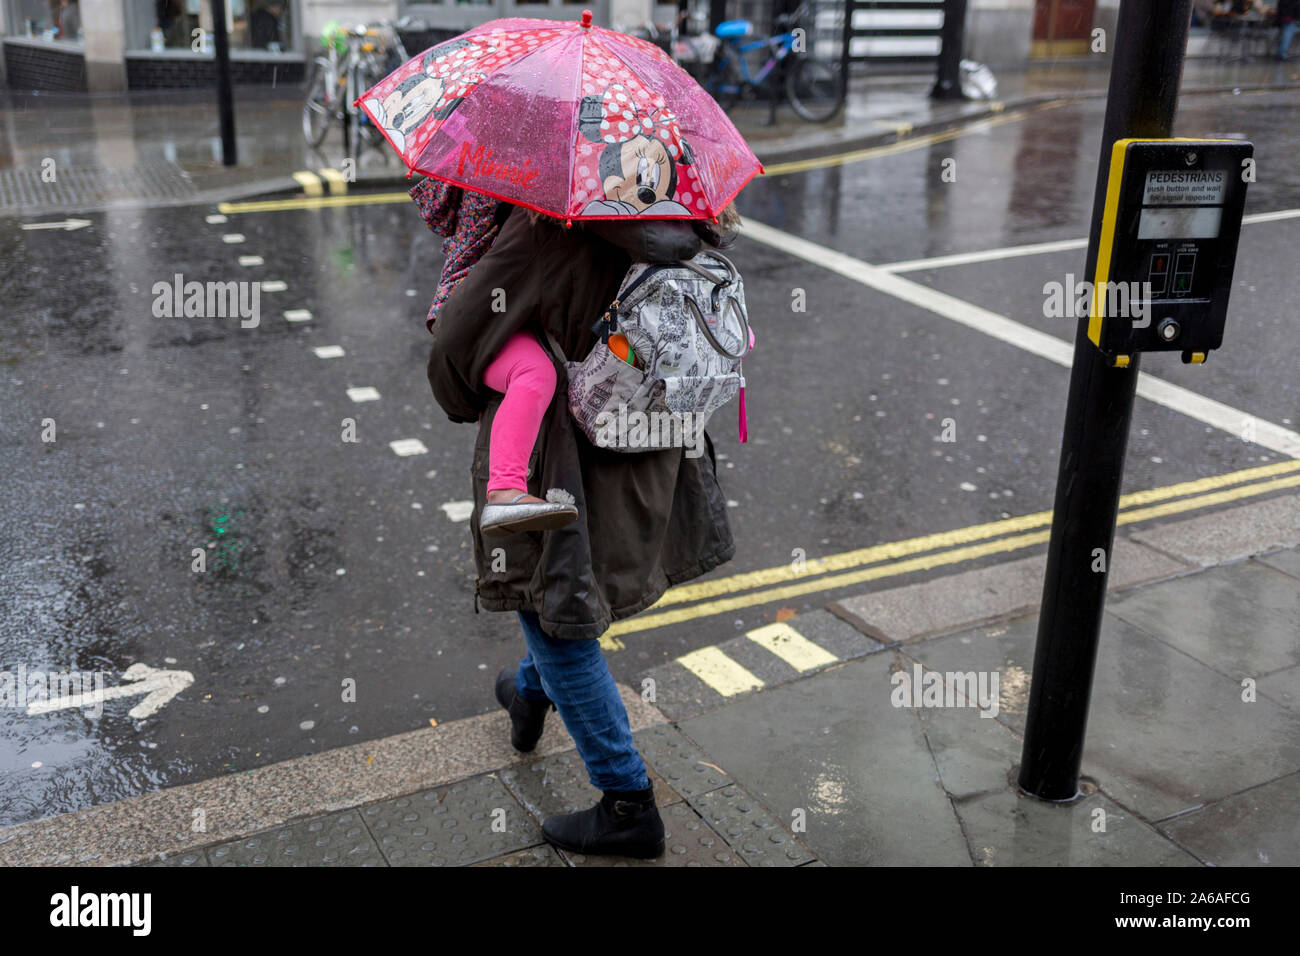 Une mère porte son enfant sous un parapluie Minnie Mouse au cours de fortes pluies sur une après-midi d'automne près de Trafalgar Square, le 24 octobre 2019, à Westminster, Londres, Angleterre. Banque D'Images